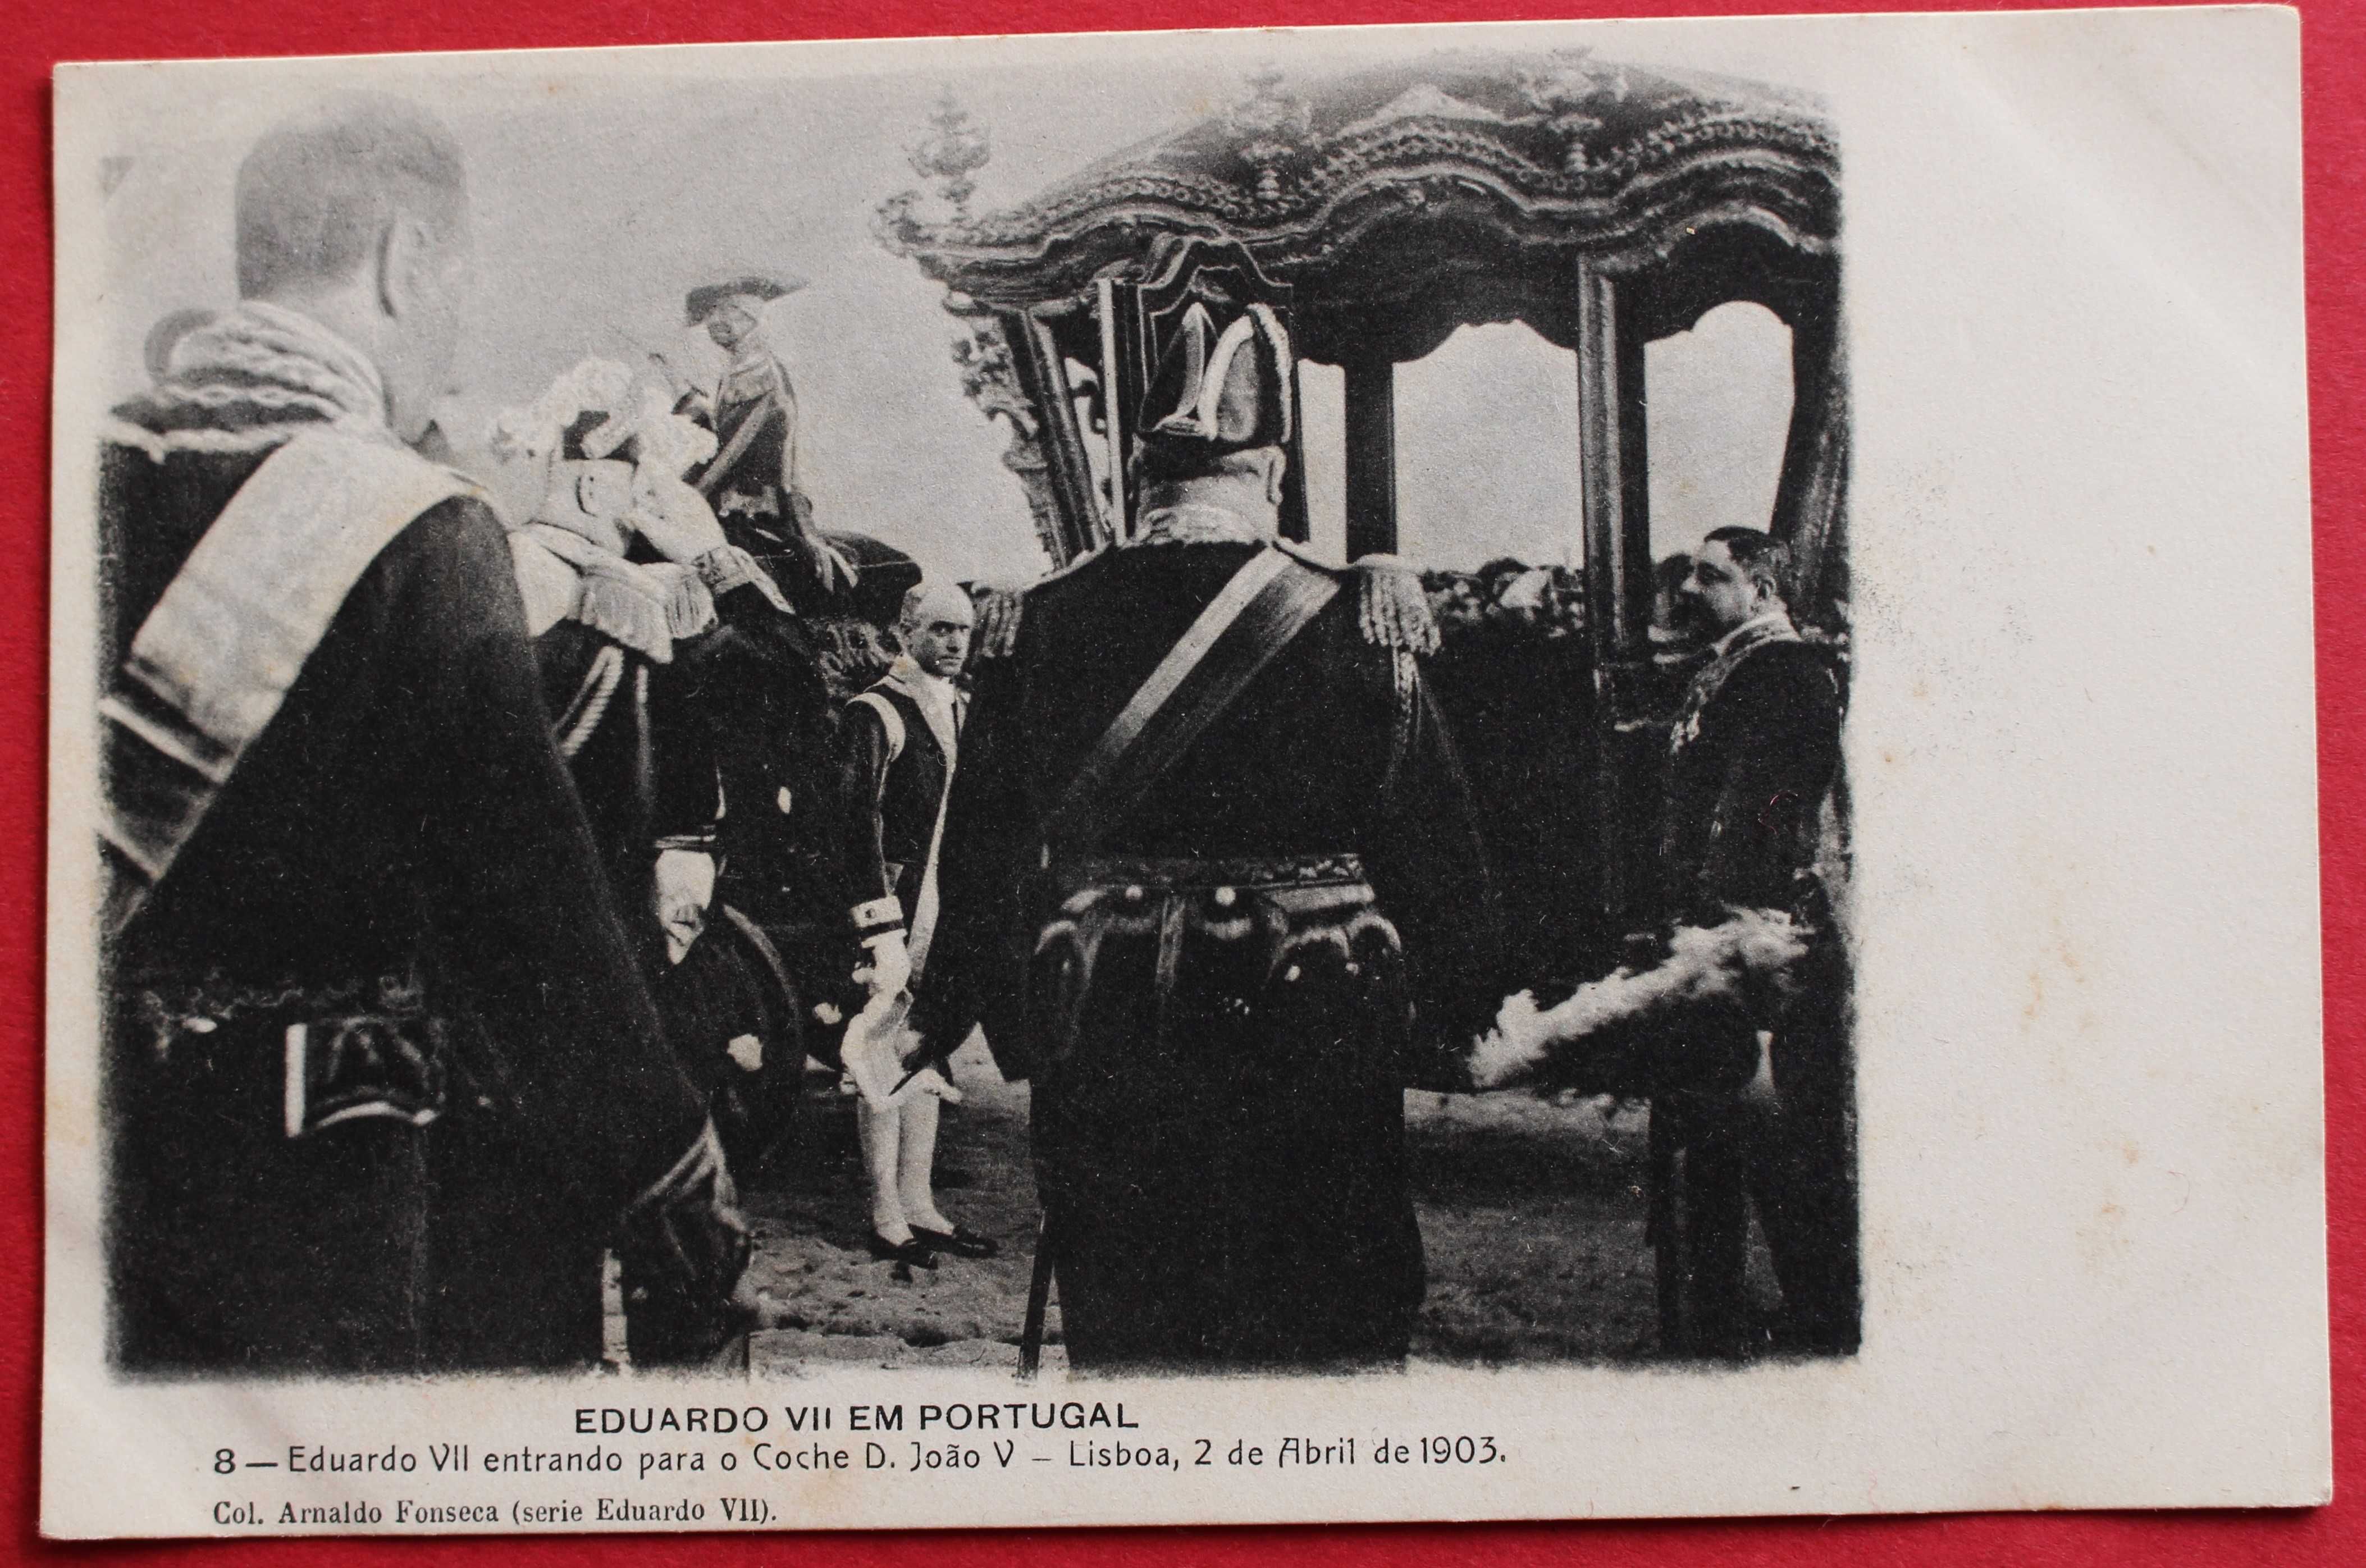 REI D CARLOS E EDUARDO VII ENTRAM COCHE 1903 FOTO ARNALDO FONSECA